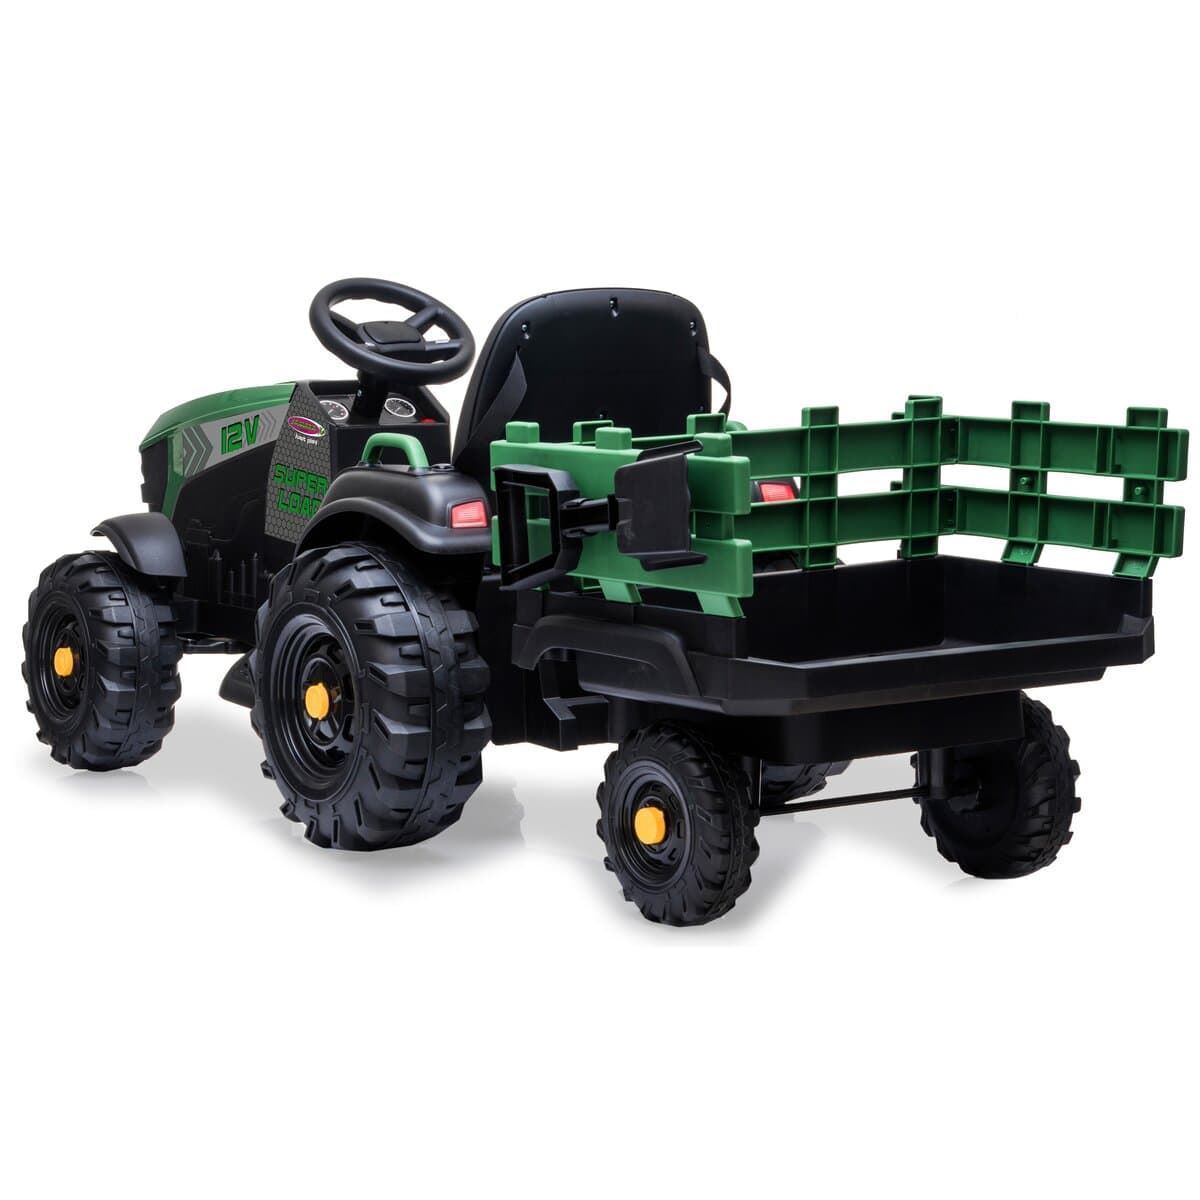 Tractor de batería 12v con remolque verde jamara 460896 - Imagen 7